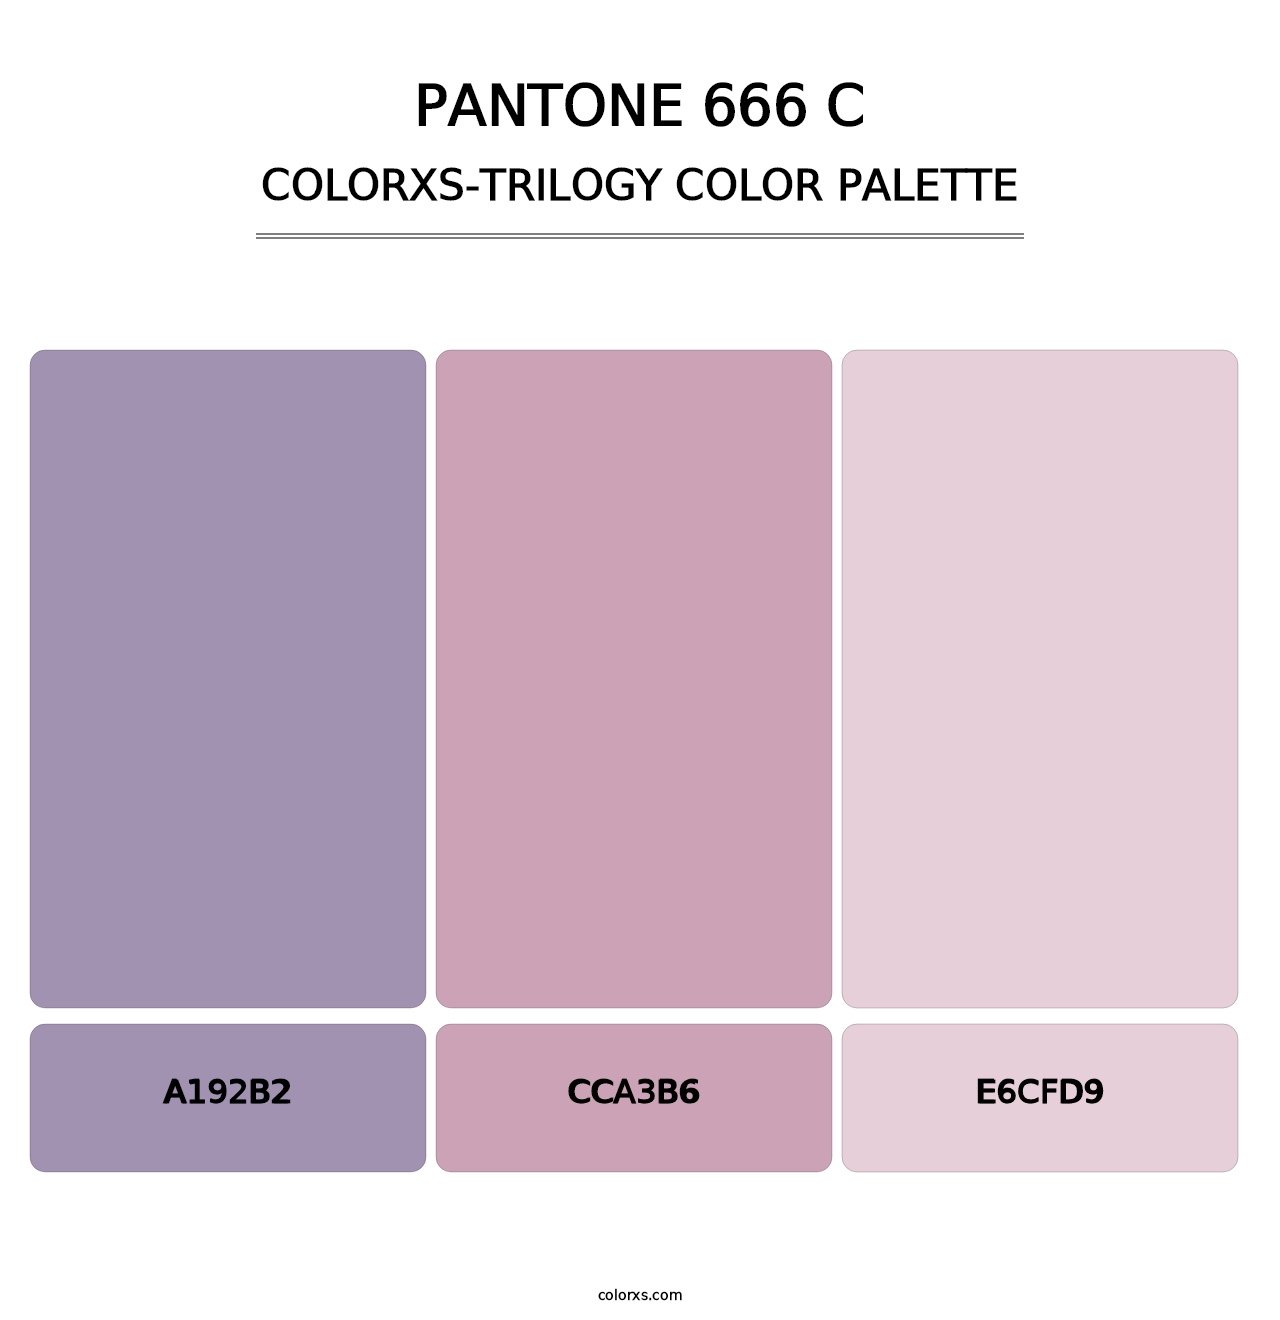 PANTONE 666 C - Colorxs Trilogy Palette